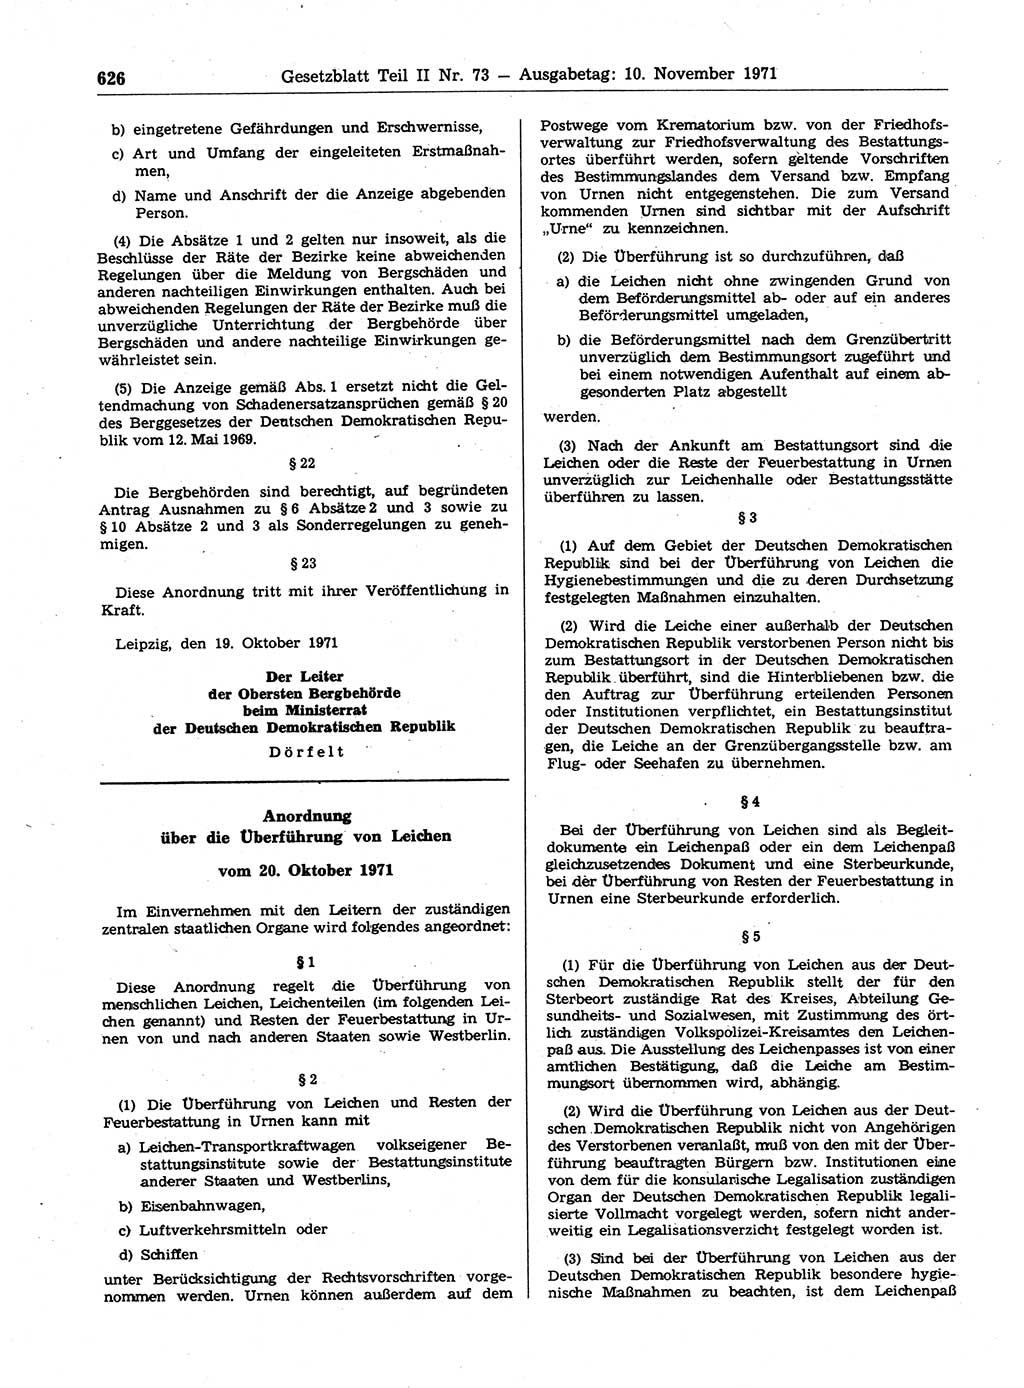 Gesetzblatt (GBl.) der Deutschen Demokratischen Republik (DDR) Teil ⅠⅠ 1971, Seite 626 (GBl. DDR ⅠⅠ 1971, S. 626)